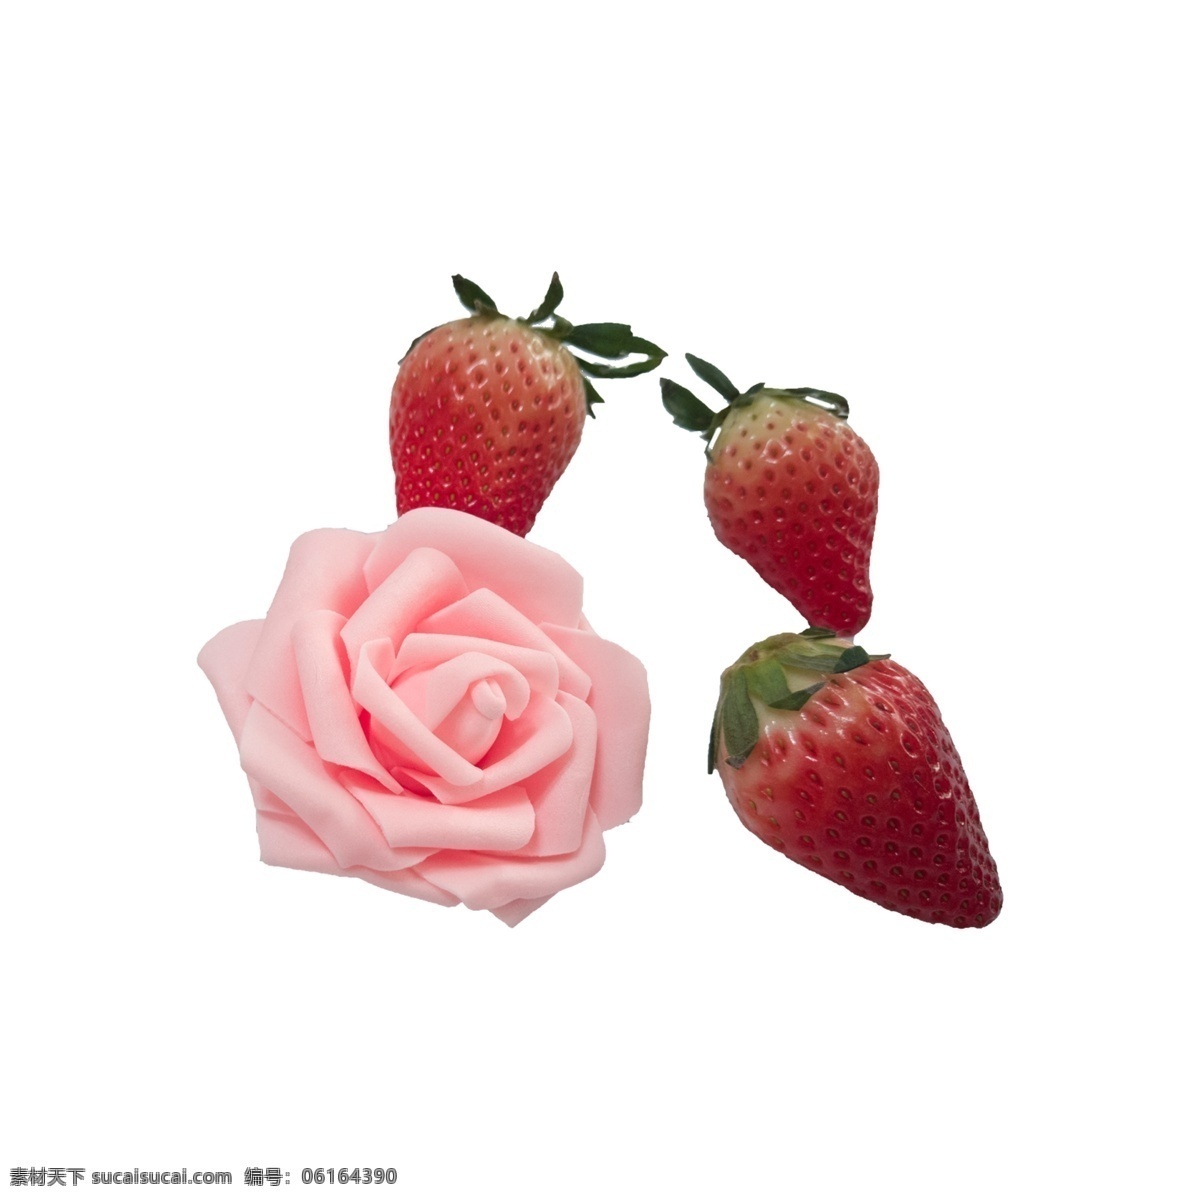 草莓 花朵 实拍 免 抠 花卉 粉色花朵 三颗草莓 水果 植物 绿叶 食物 观赏 摆拍 实物拍摄